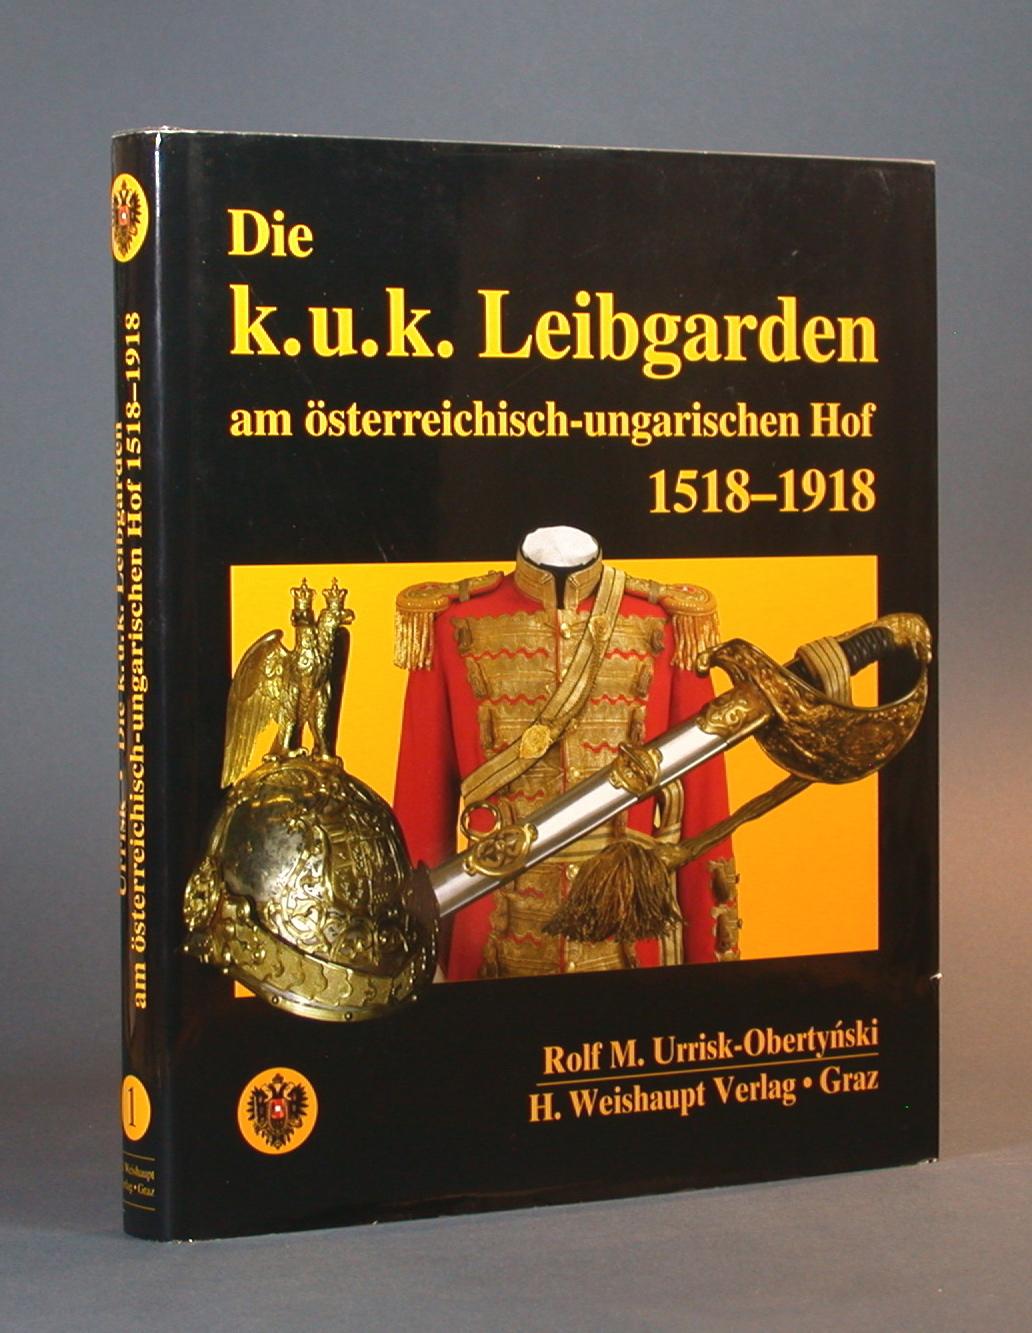 Die k.u.k. Leibgarden am österreichisch-ungarischen Hof 1518-1918